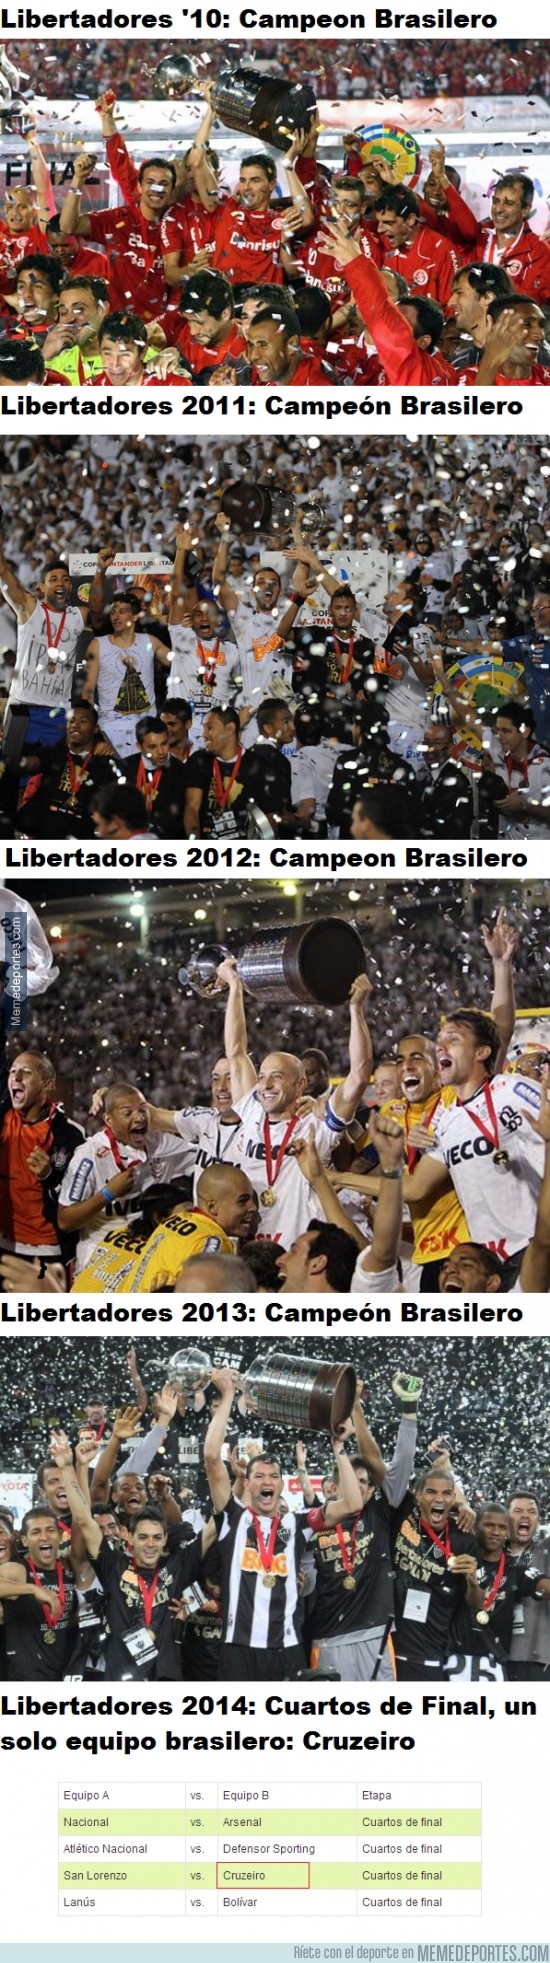 310957 - Libertadores 2014 ¿Se cortará la racha, o Cruzeiro lo logrará?